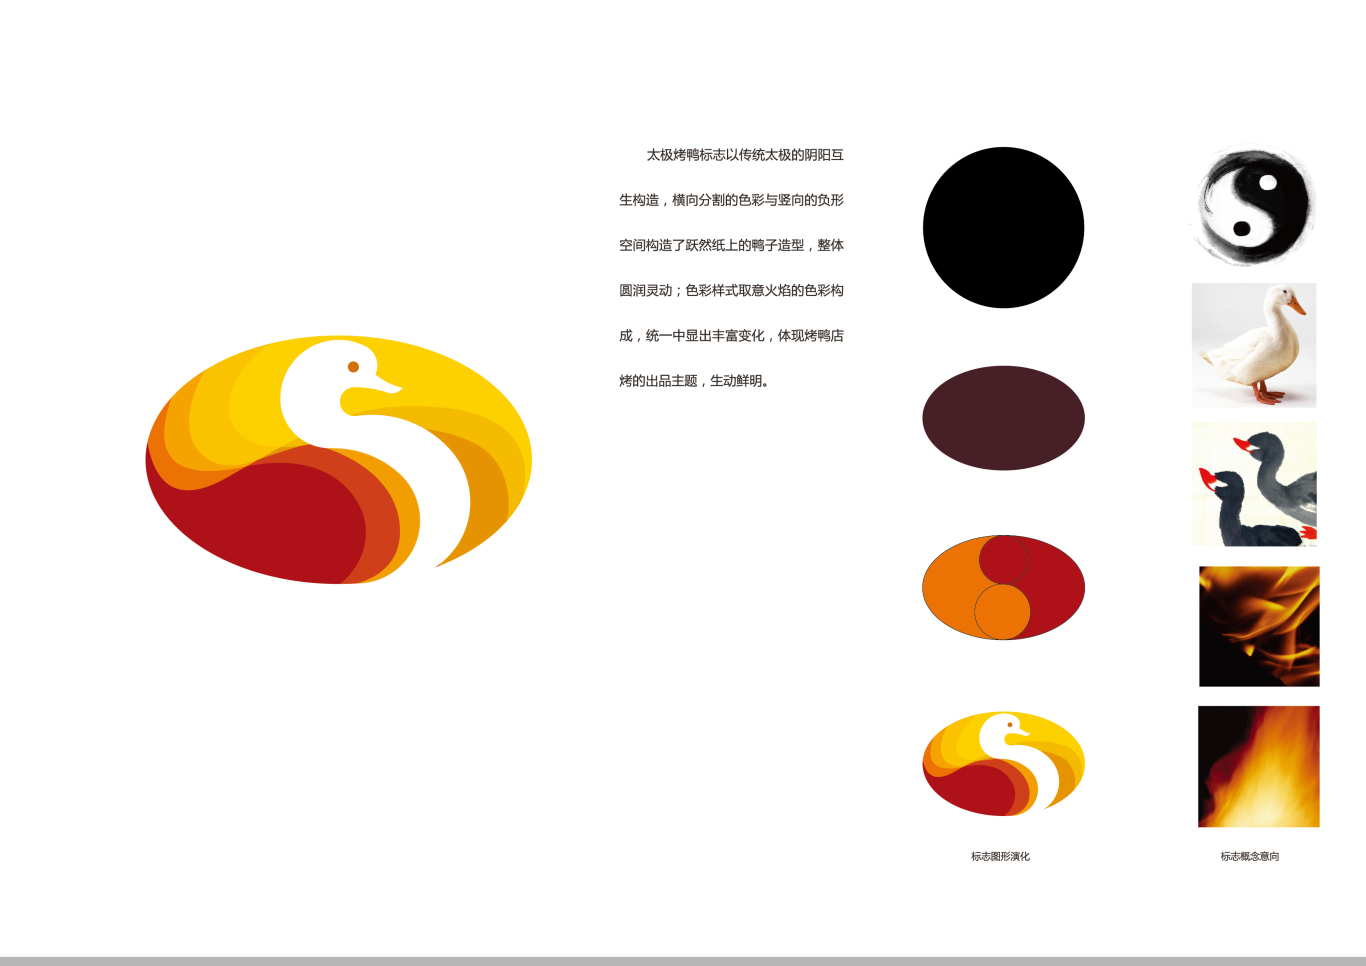 太极烤鸭餐厅 标志及品牌识别整体设计图1